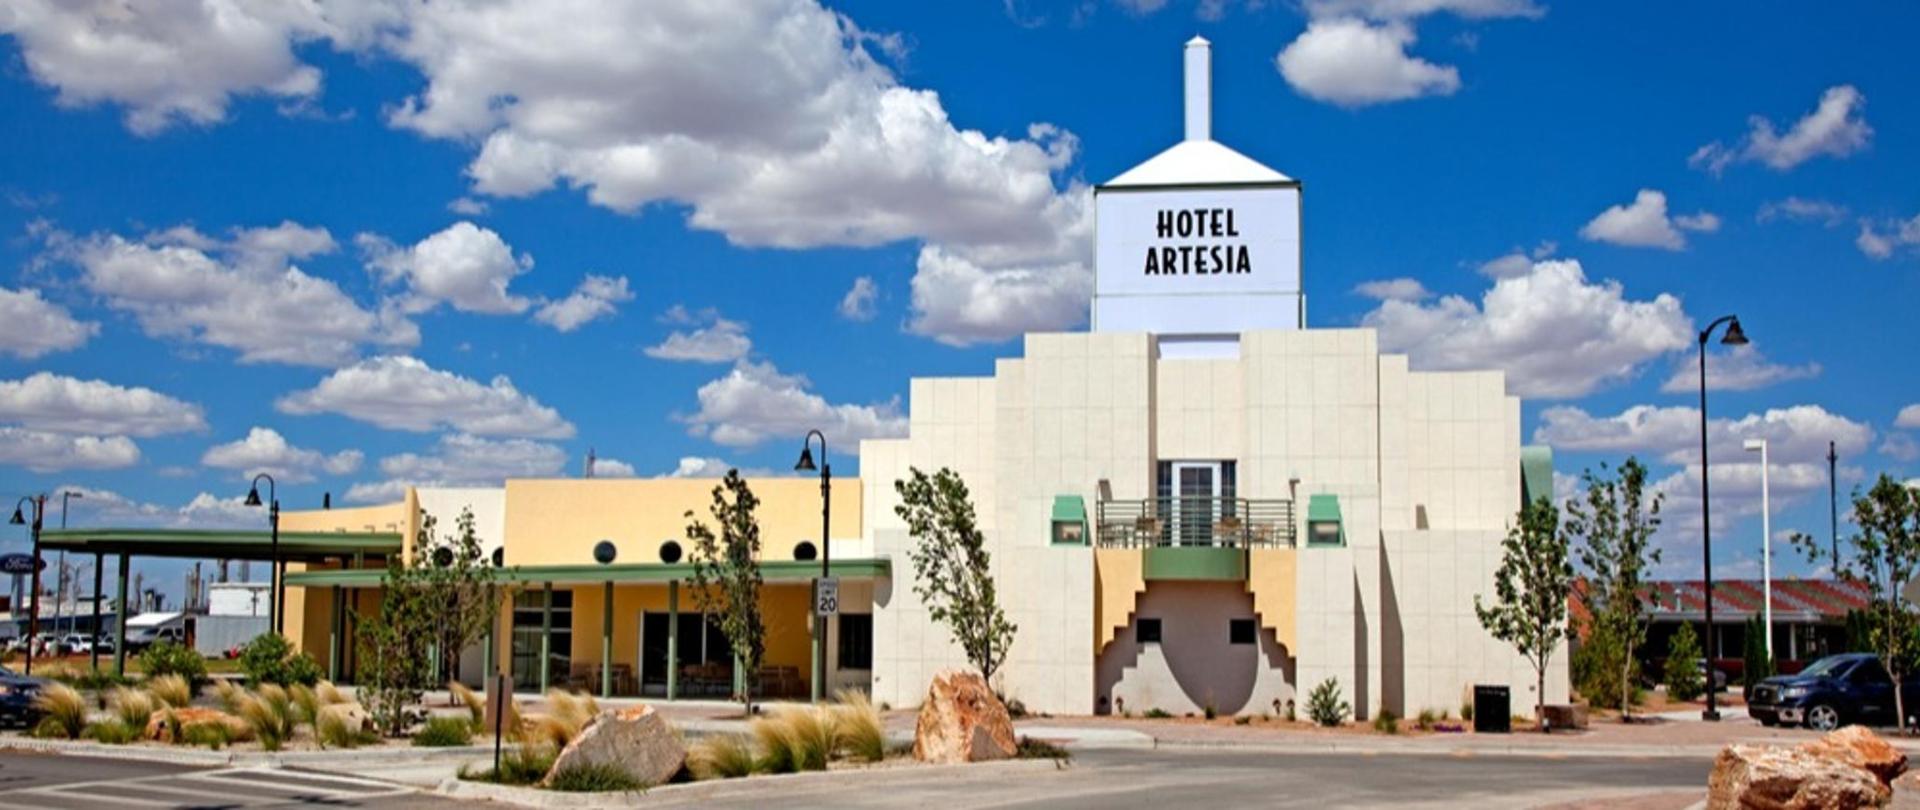 hotel artesia hotel in artesia new mexico hotel artesia hotel in artesia new